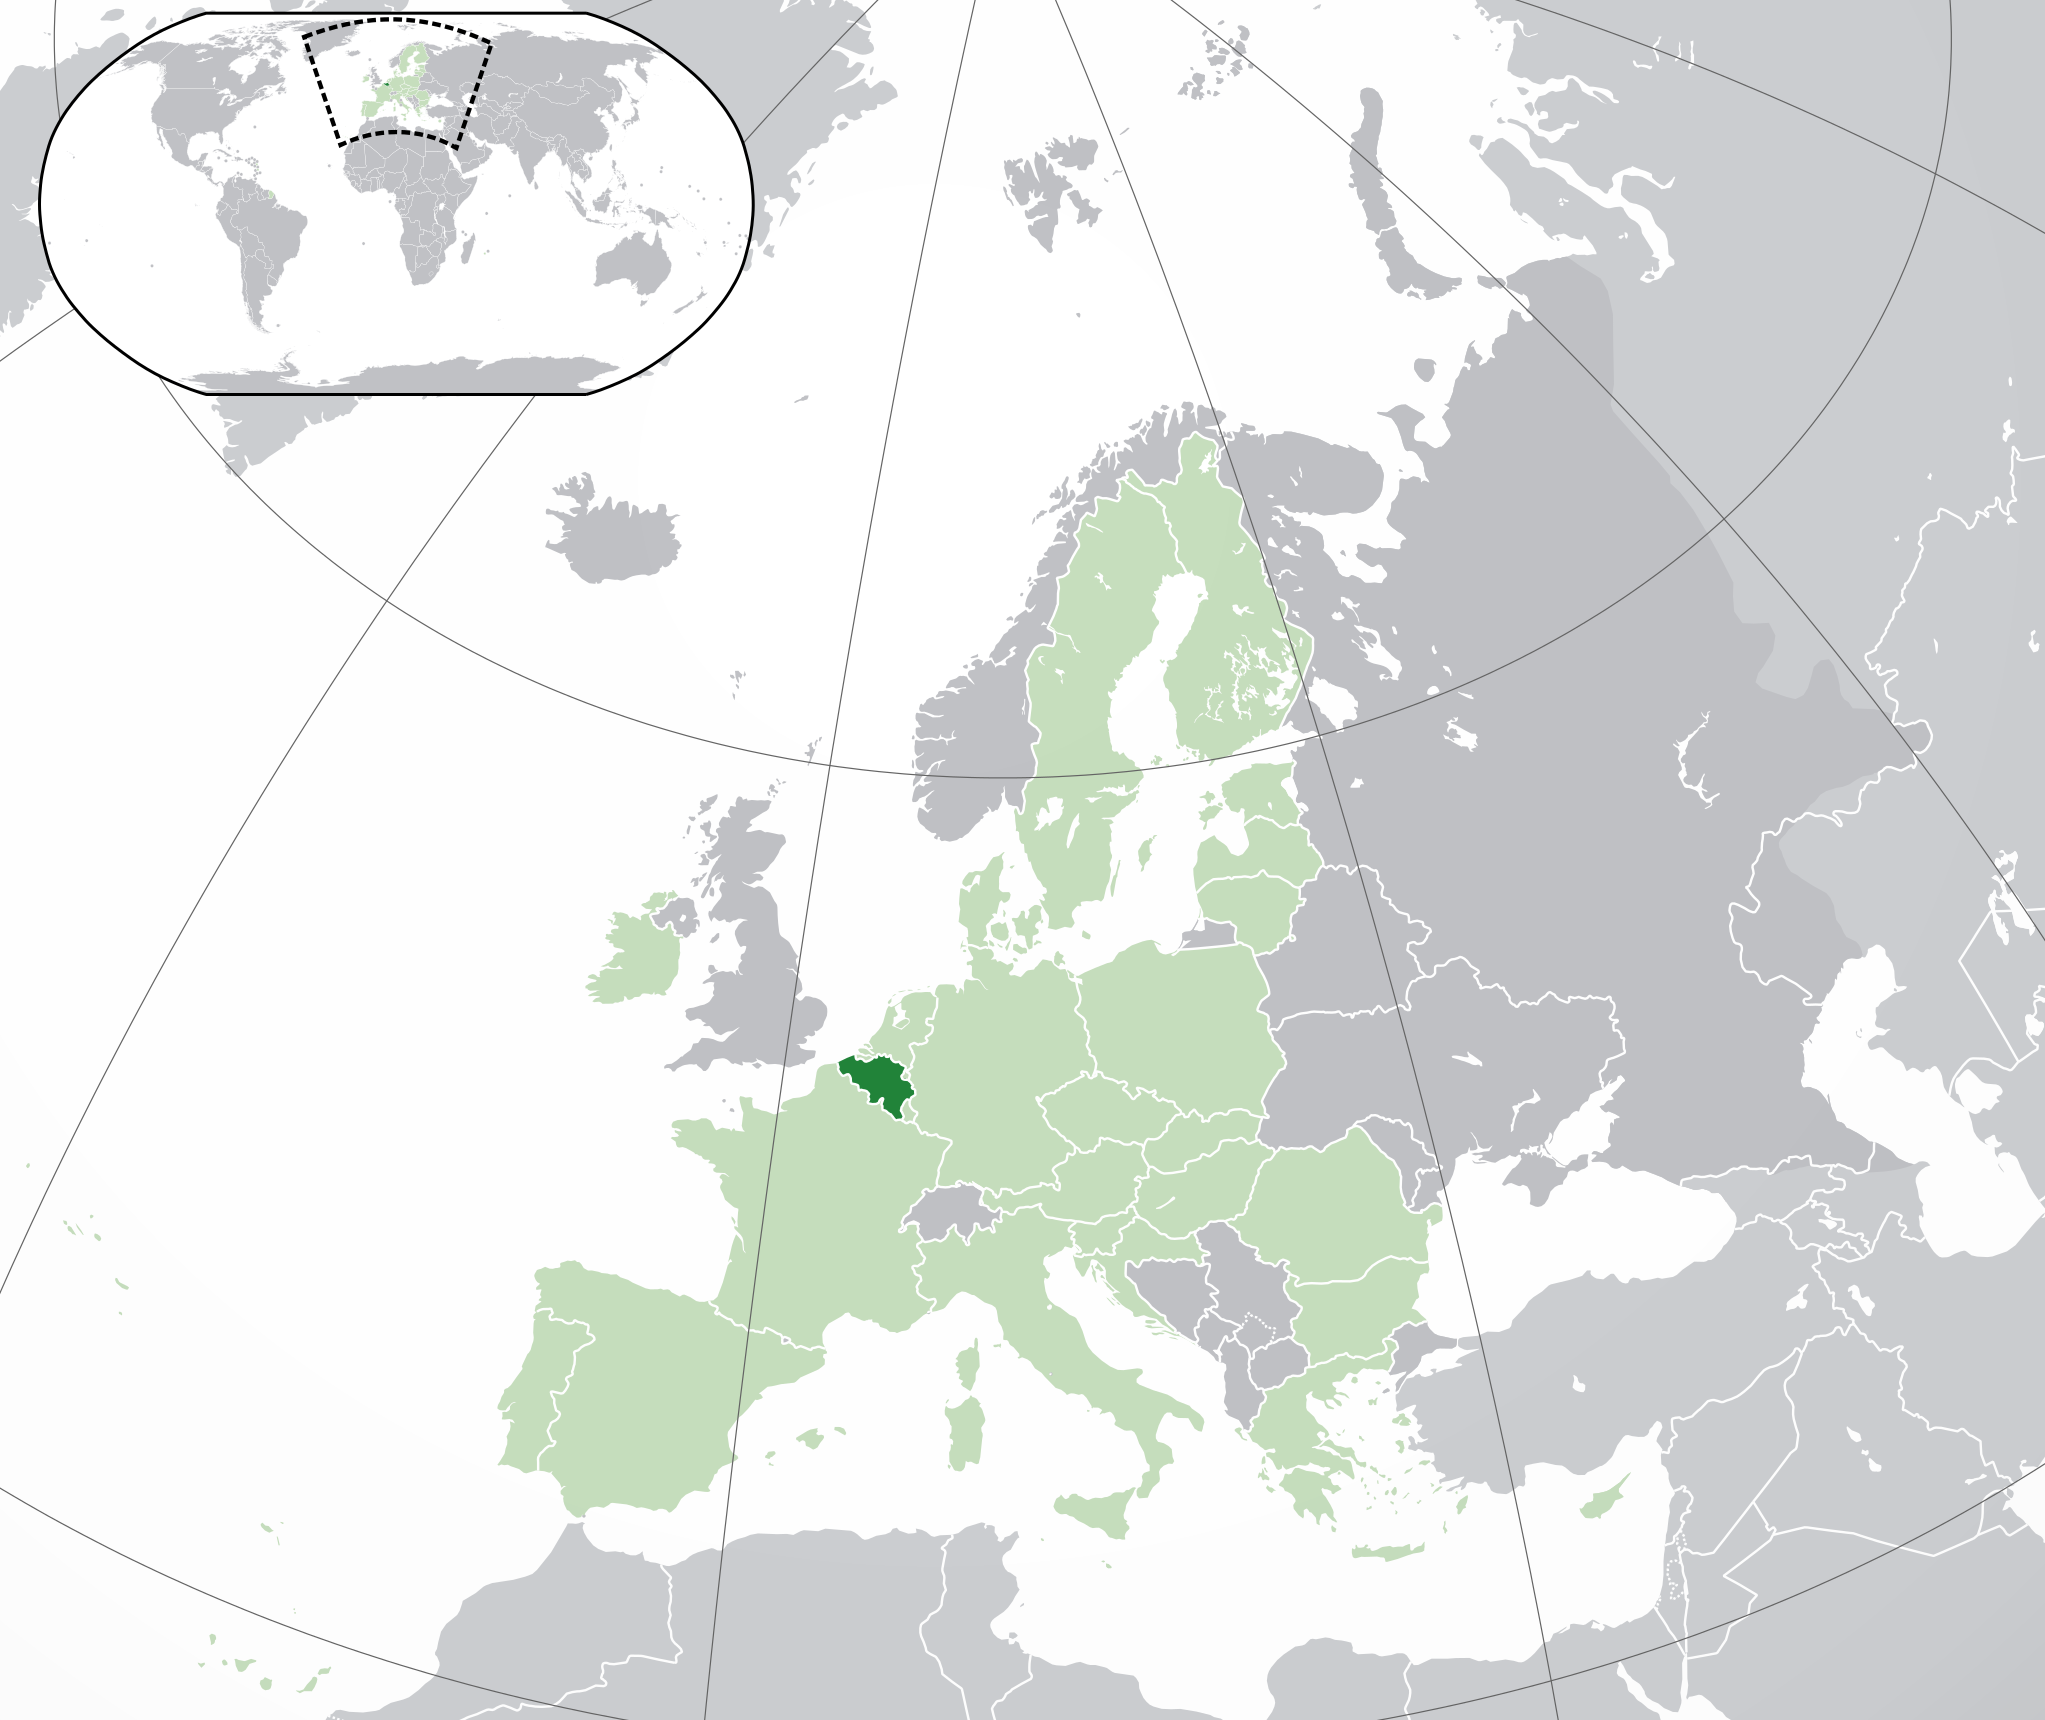 Location of Kingdom of Belgium